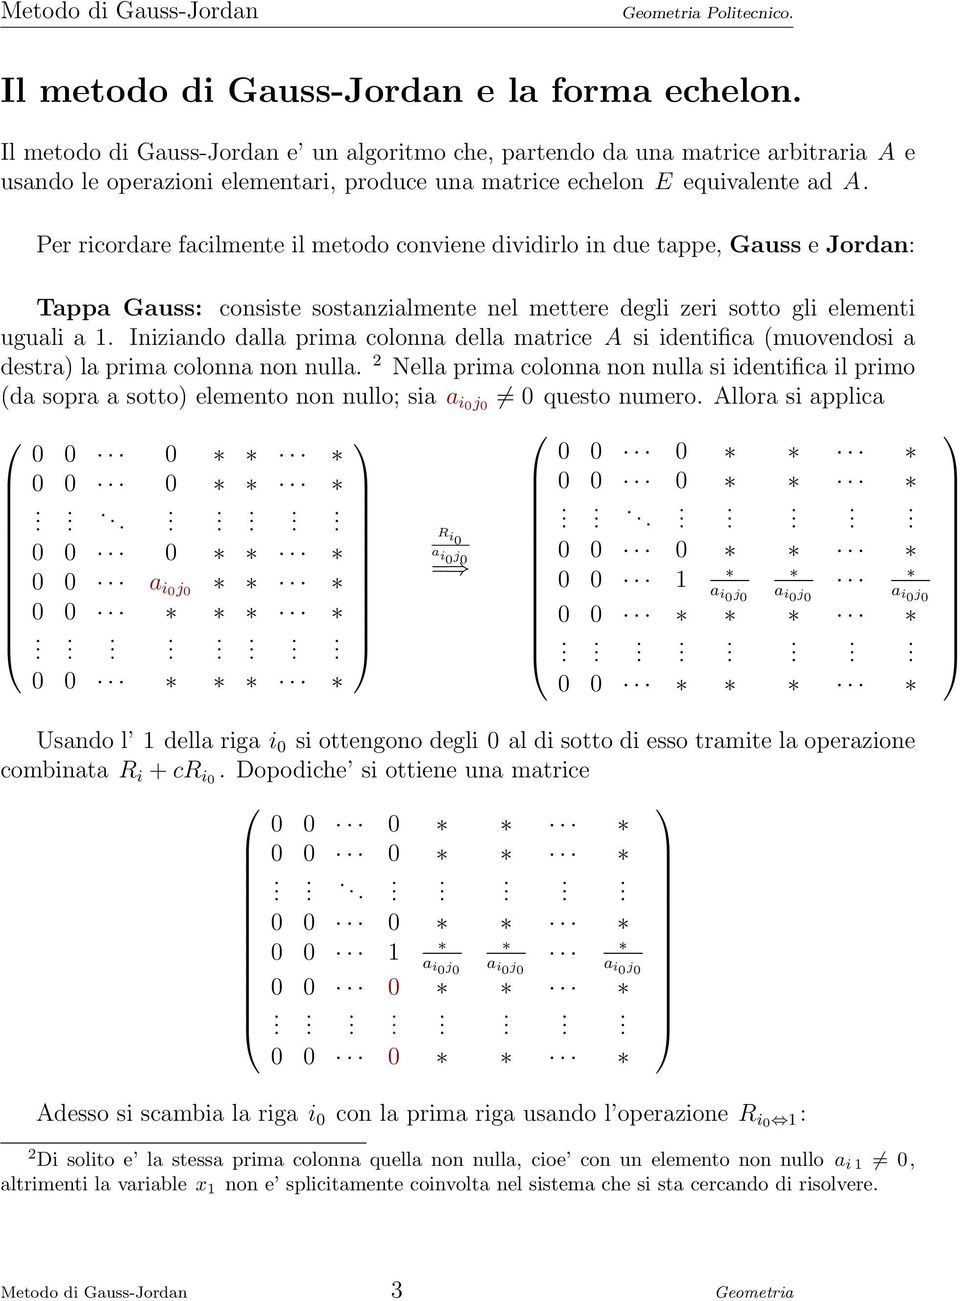 Per ricordare facilmente il metodo conviene dividirlo in due tappe, Gauss e Jordan: Tappa Gauss: consiste sostanzialmente nel mettere degli zeri sotto gli elementi uguali a 1.